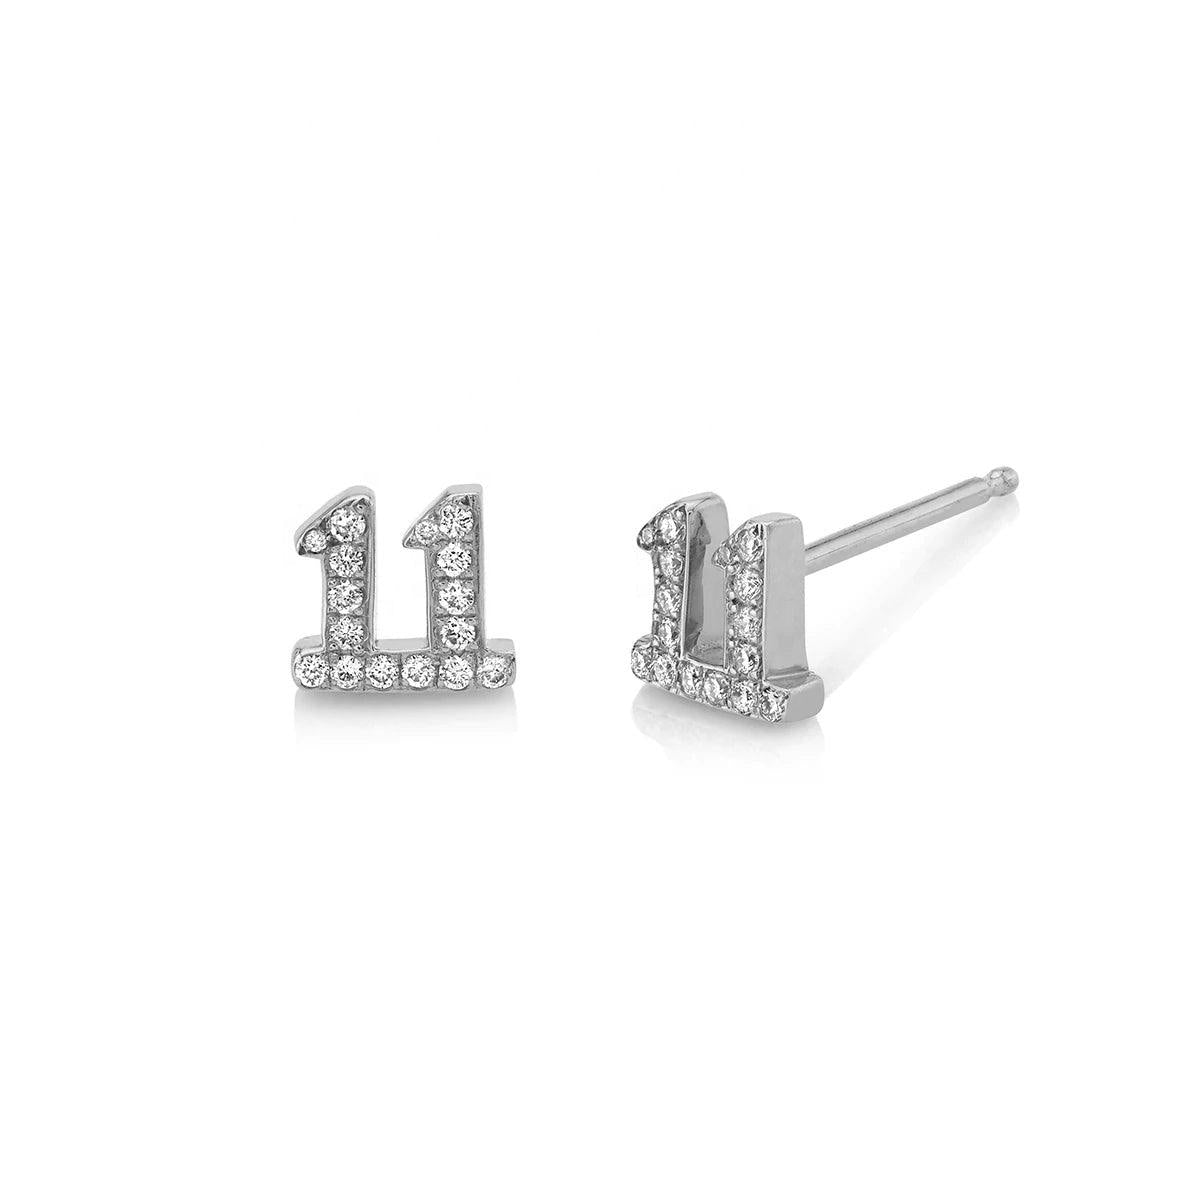 Laila 11:11 Stud Earrings | 925 Sterling Silver - Luna Charles | 11:11, angel numbers, Earrings, everyday, gemstone, Jewellery, silver, sparkle, studs | 